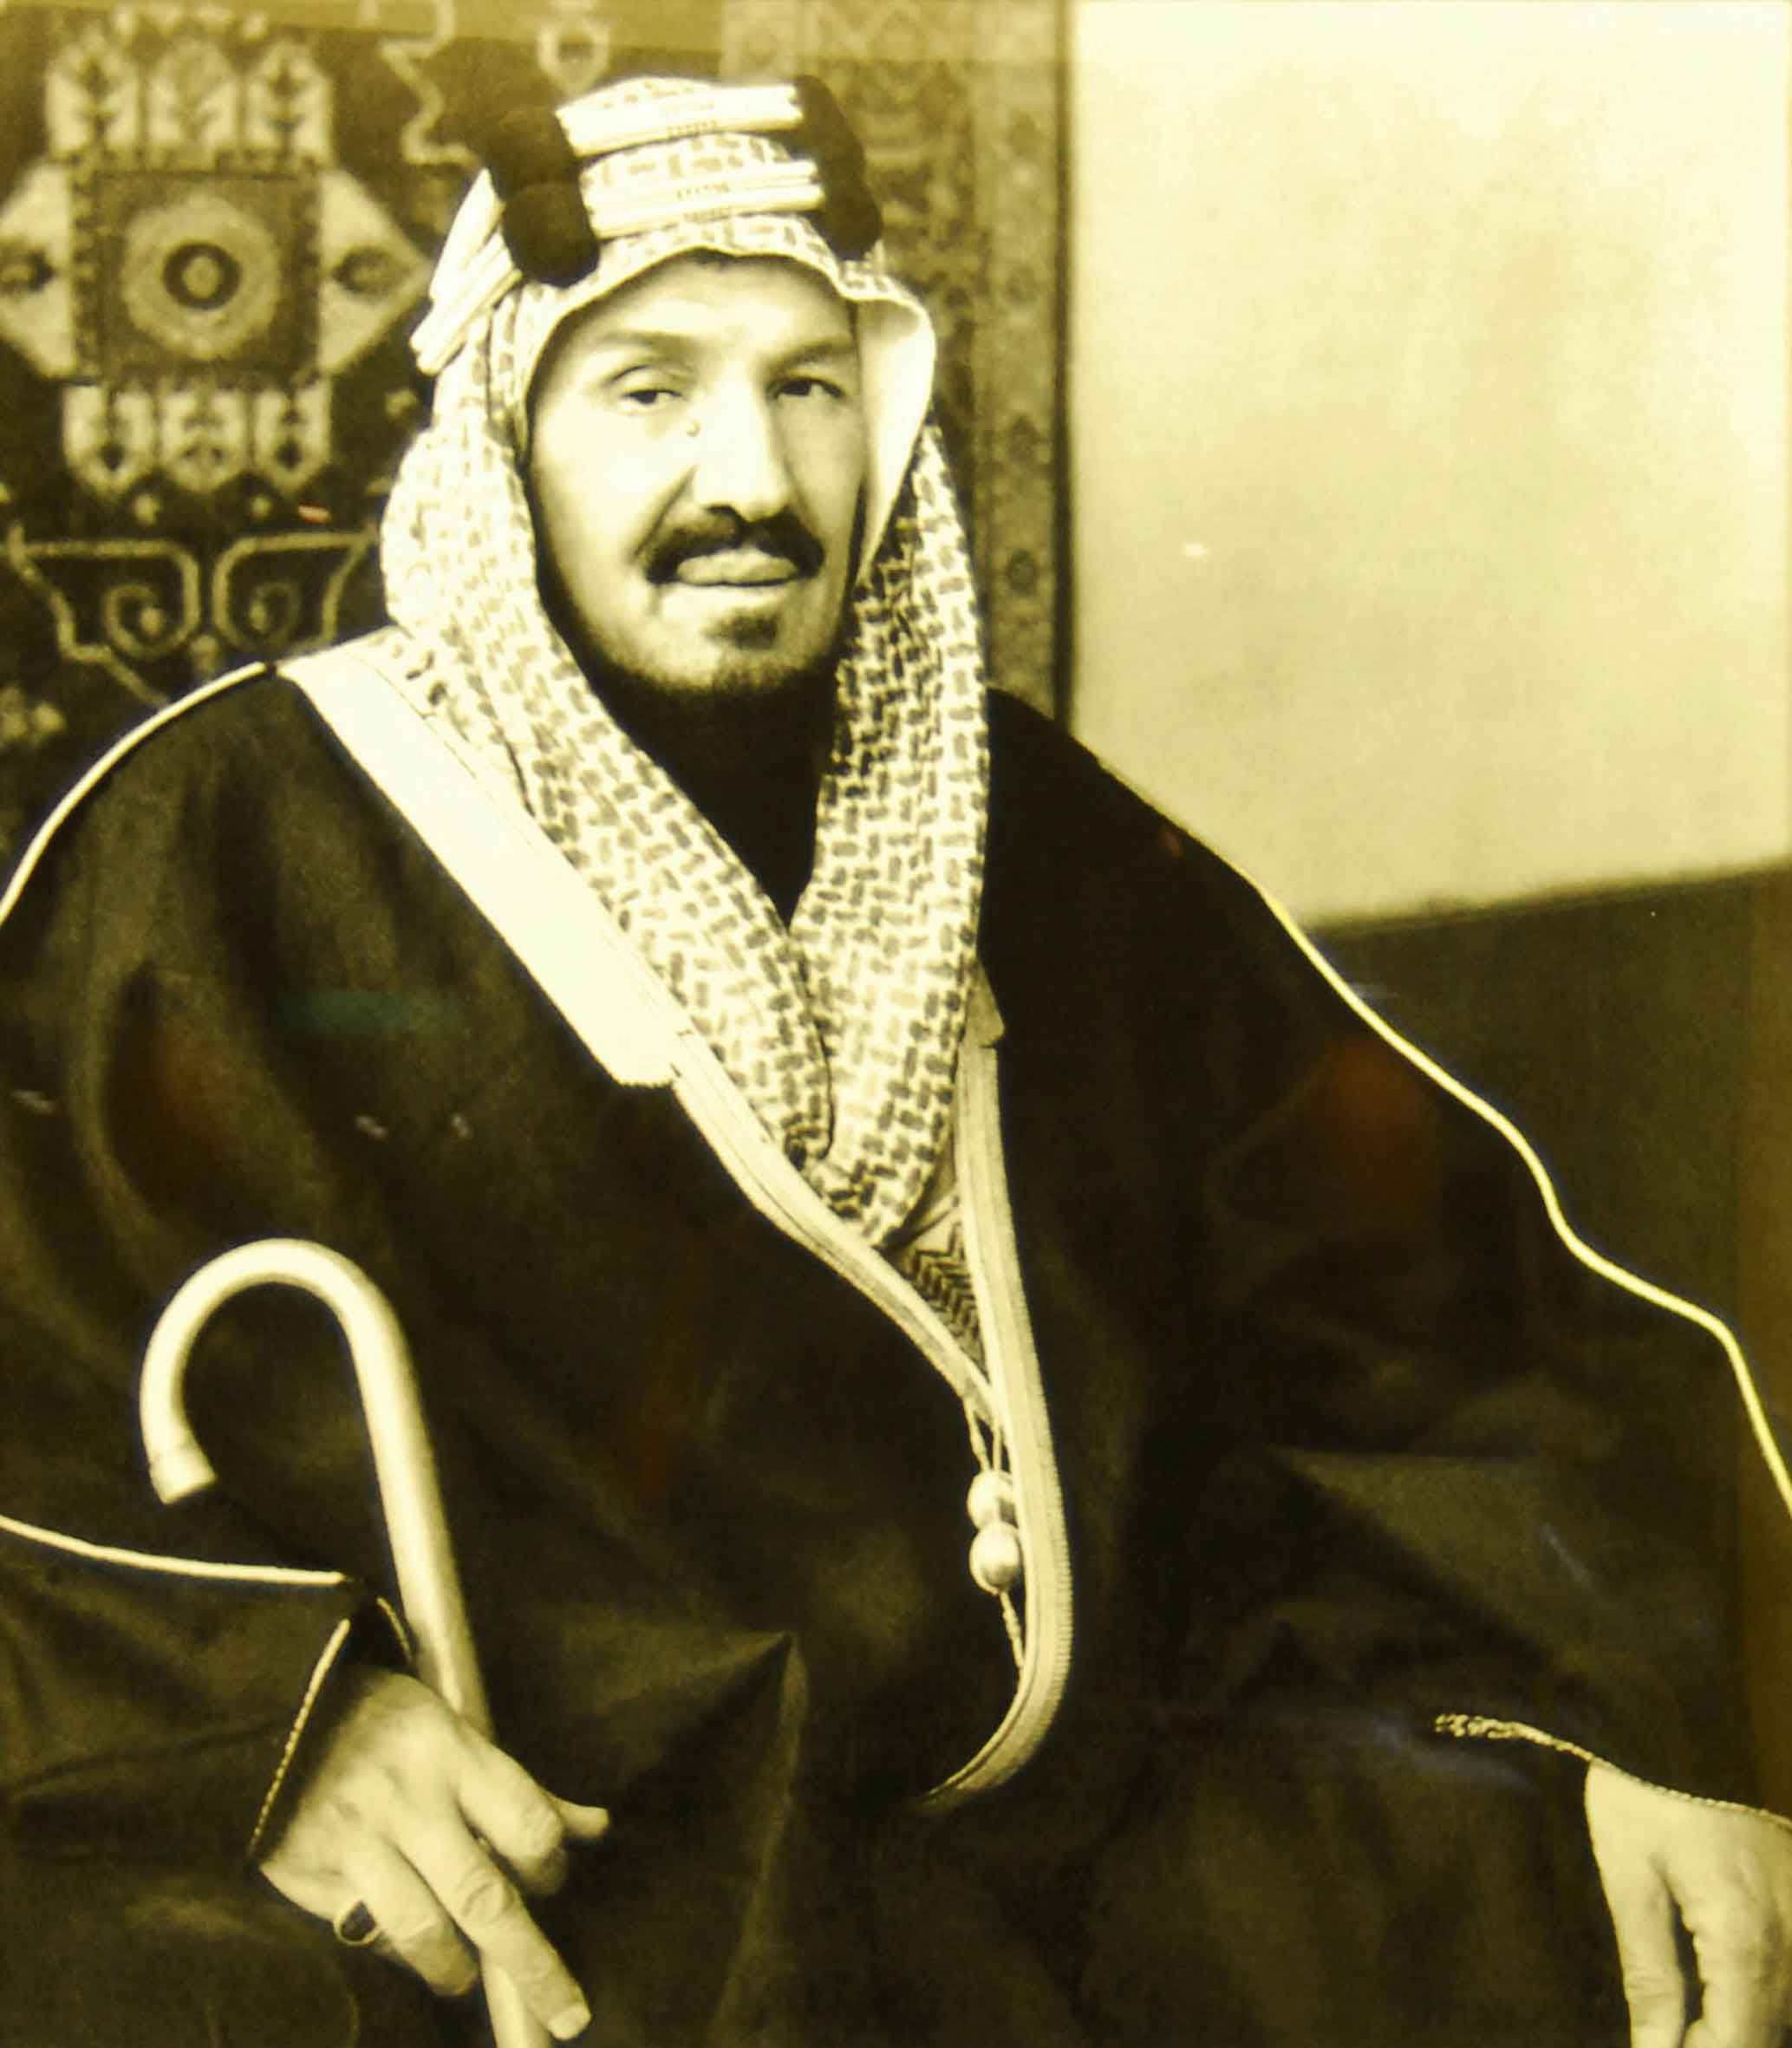 بتسمية اُصدر في بالمملكة الملكي السعودية عام الوطن العربية الامر اعلن الملك